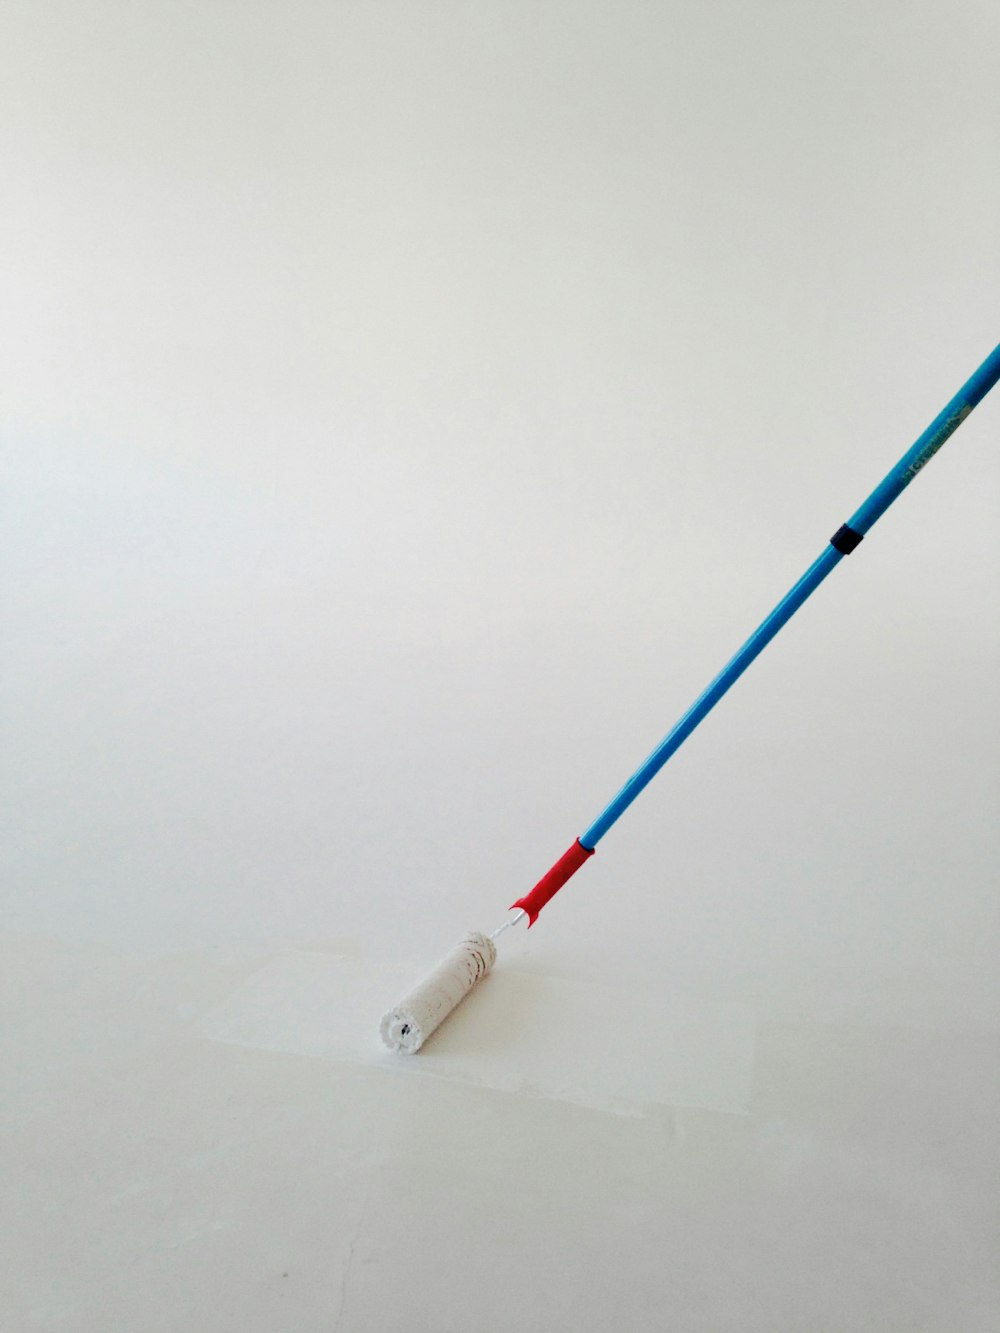 bolígrafo blanco y azul sobre superficie blanca